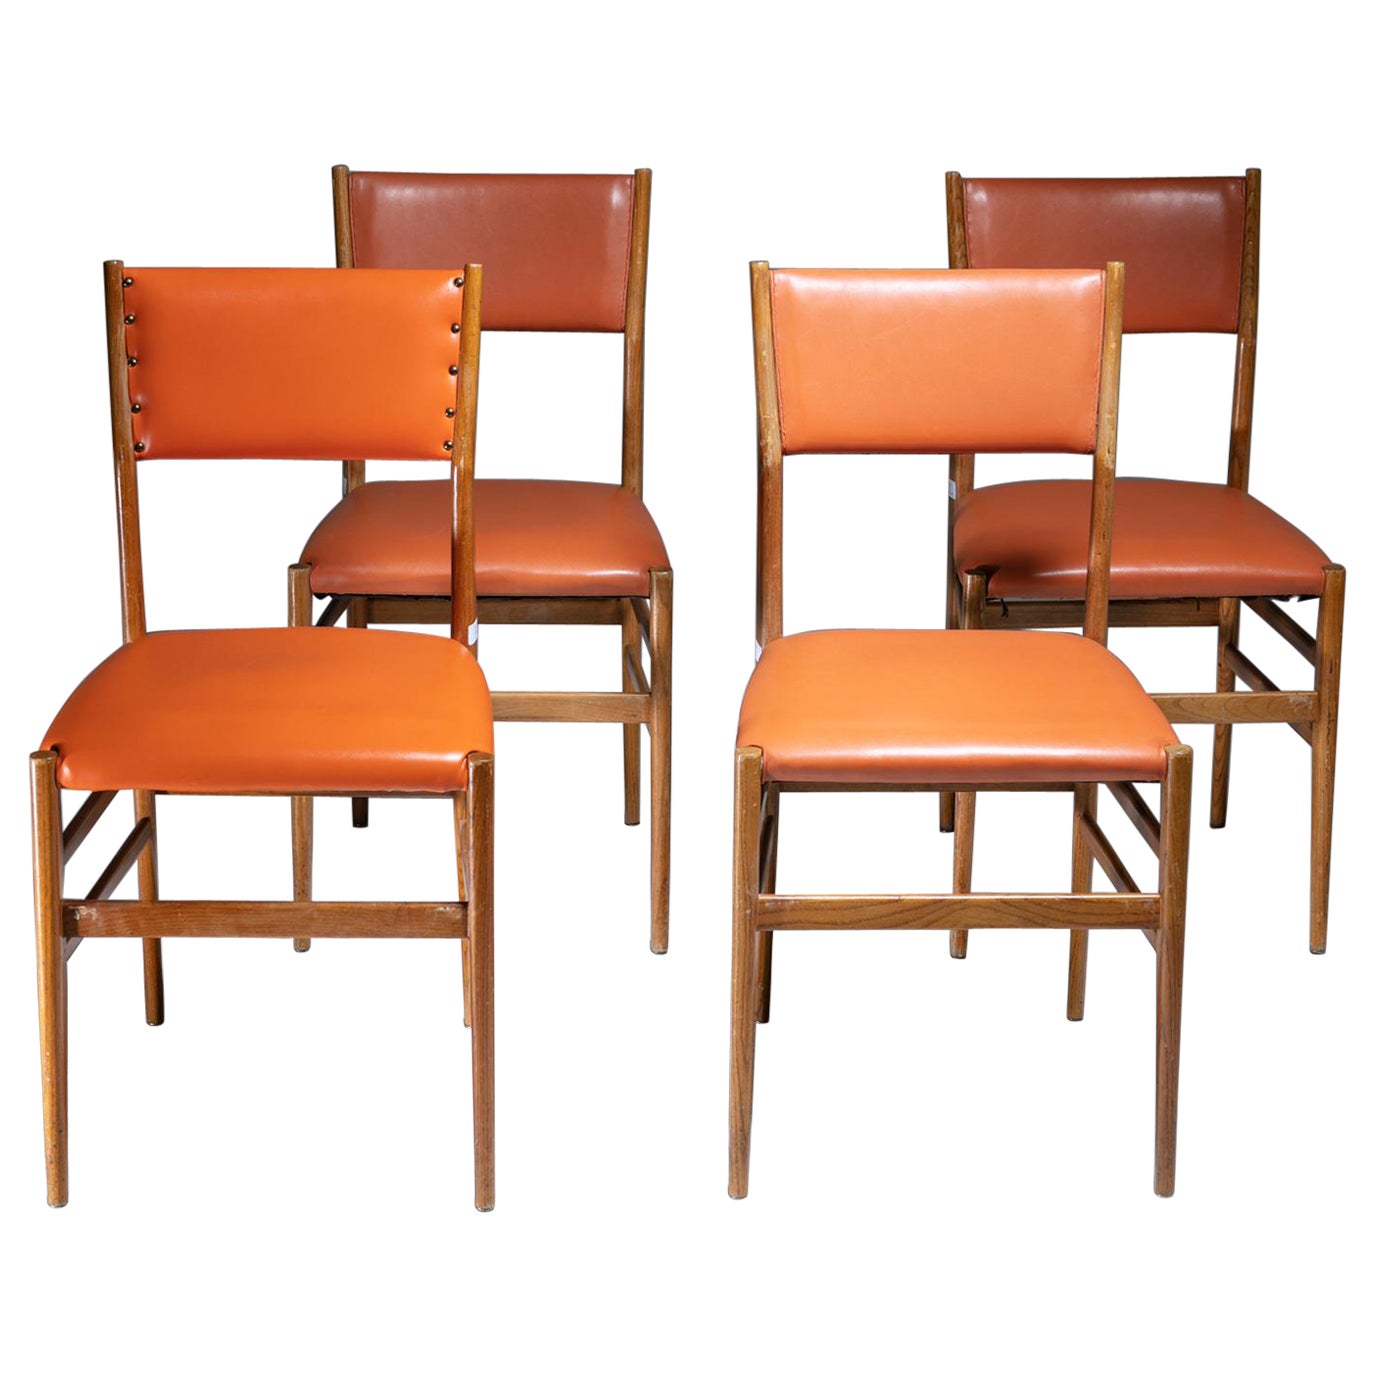 Ensemble de 4 chaises "Leggera" en cuir orange par Gio Ponti pour Cassina, Italie, années 1950